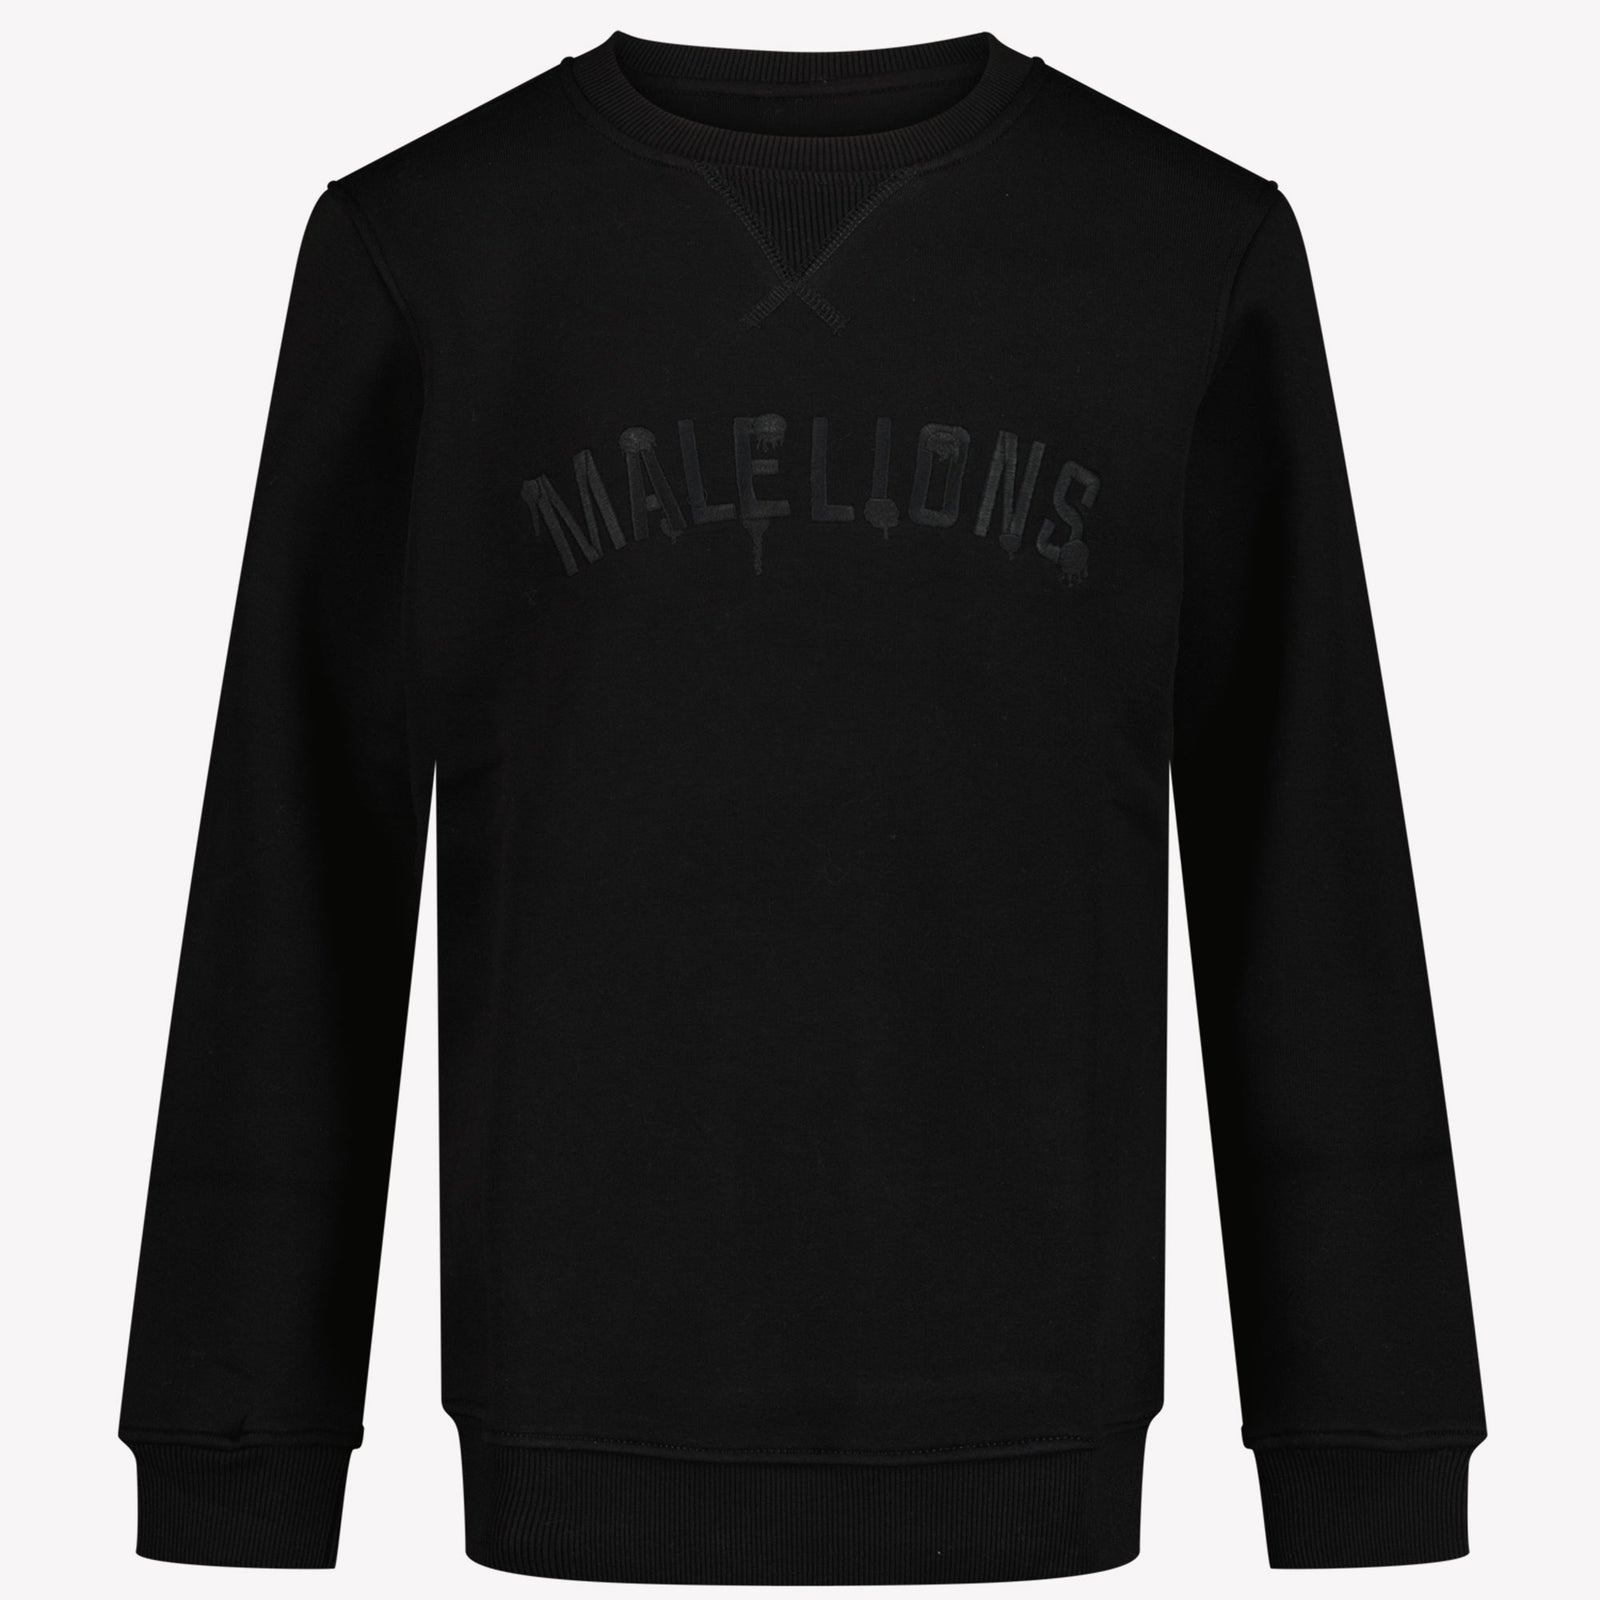 Malelions Unisex -Pullover Schwarz